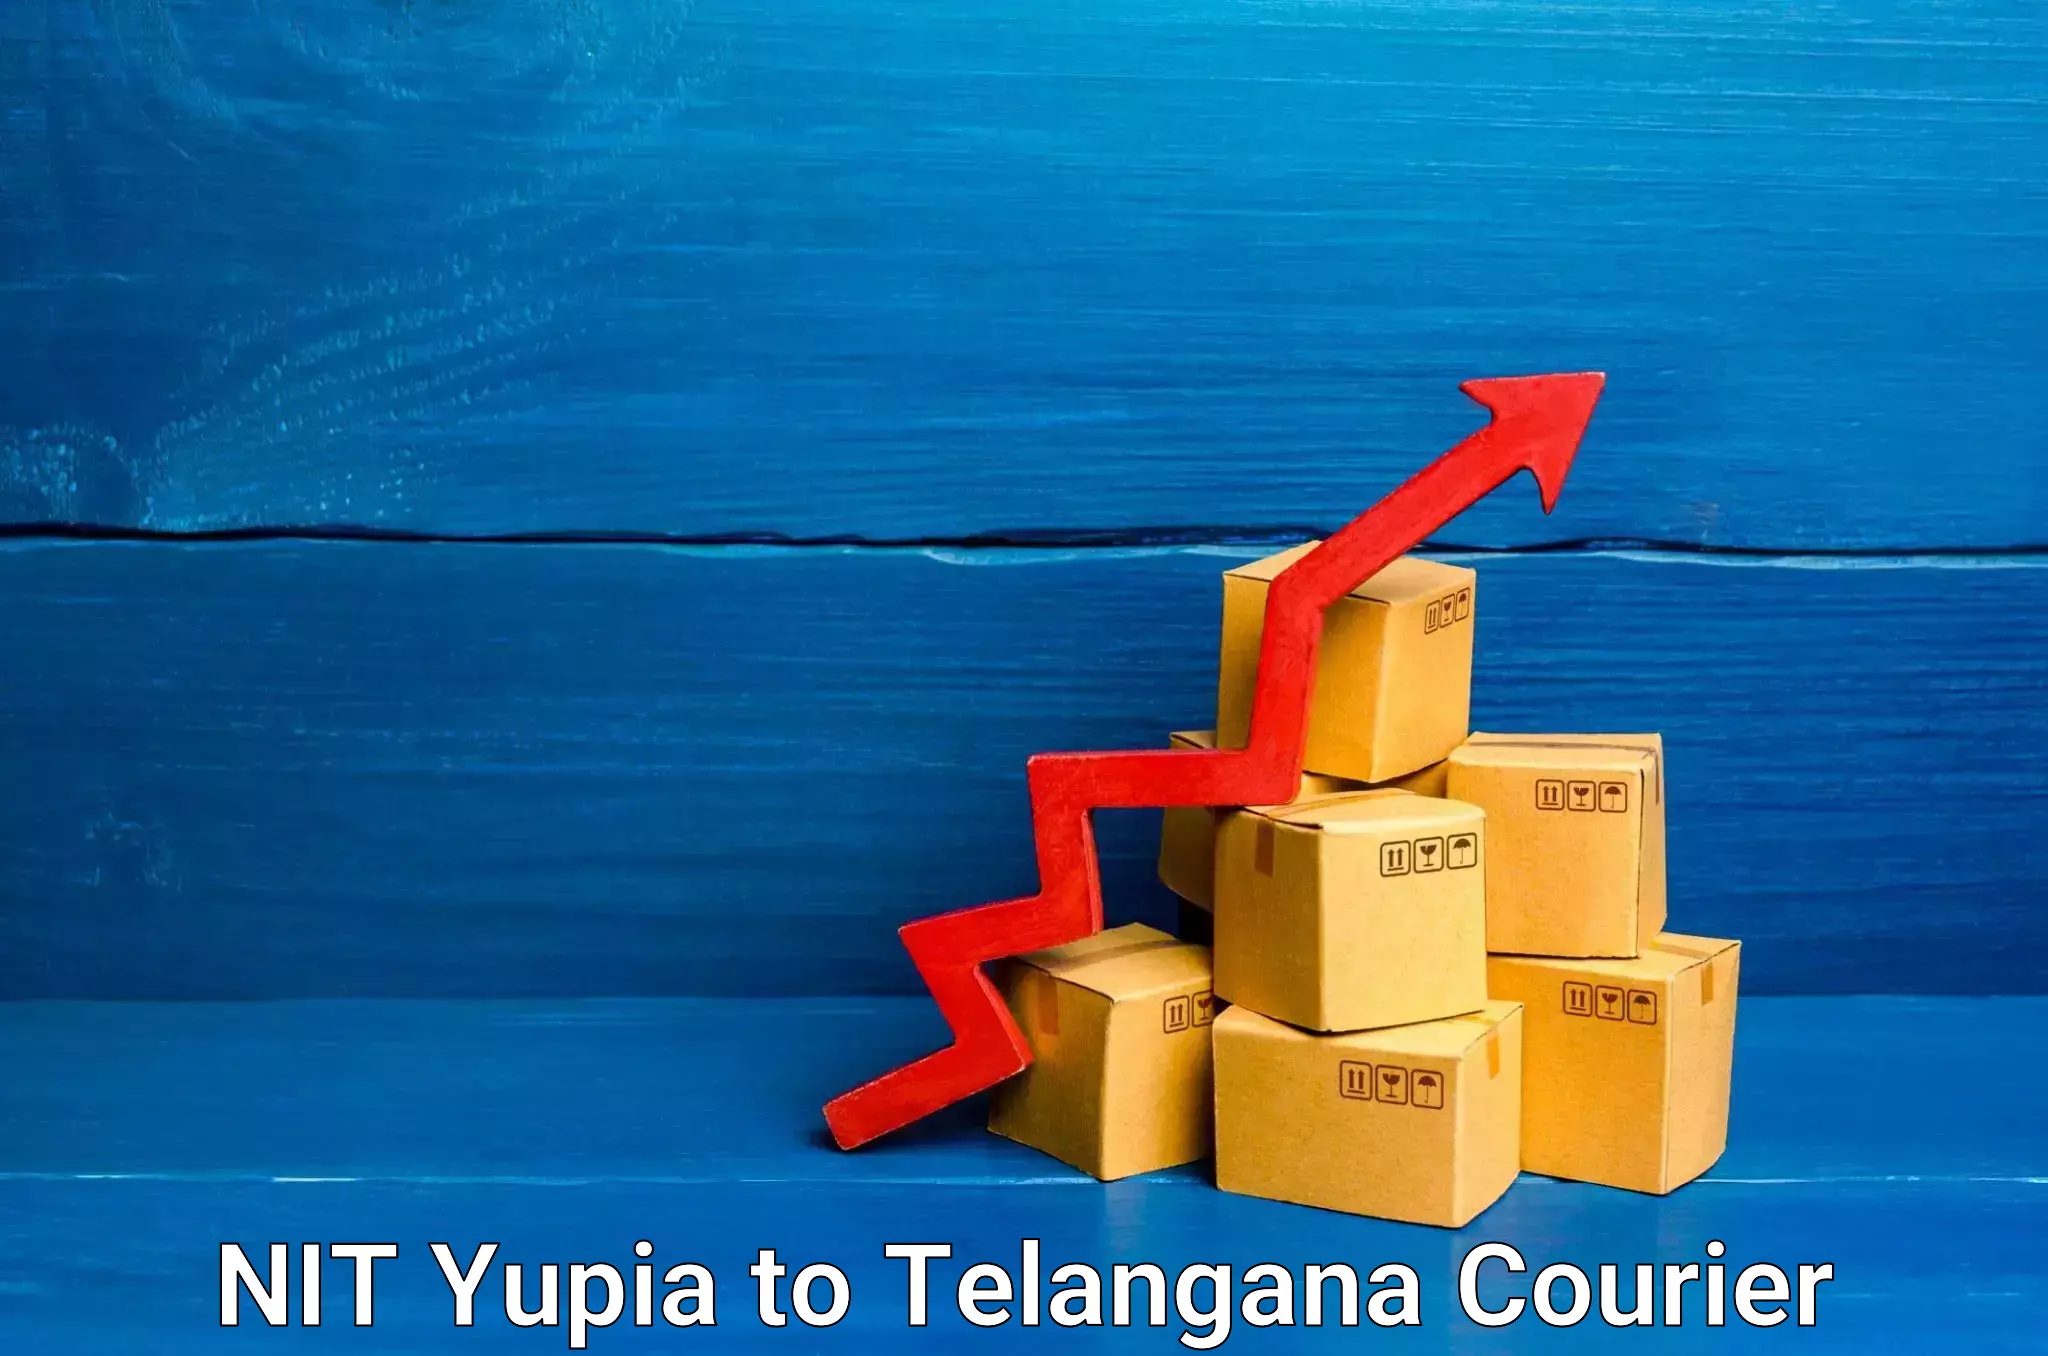 Express logistics providers NIT Yupia to Narayanpet